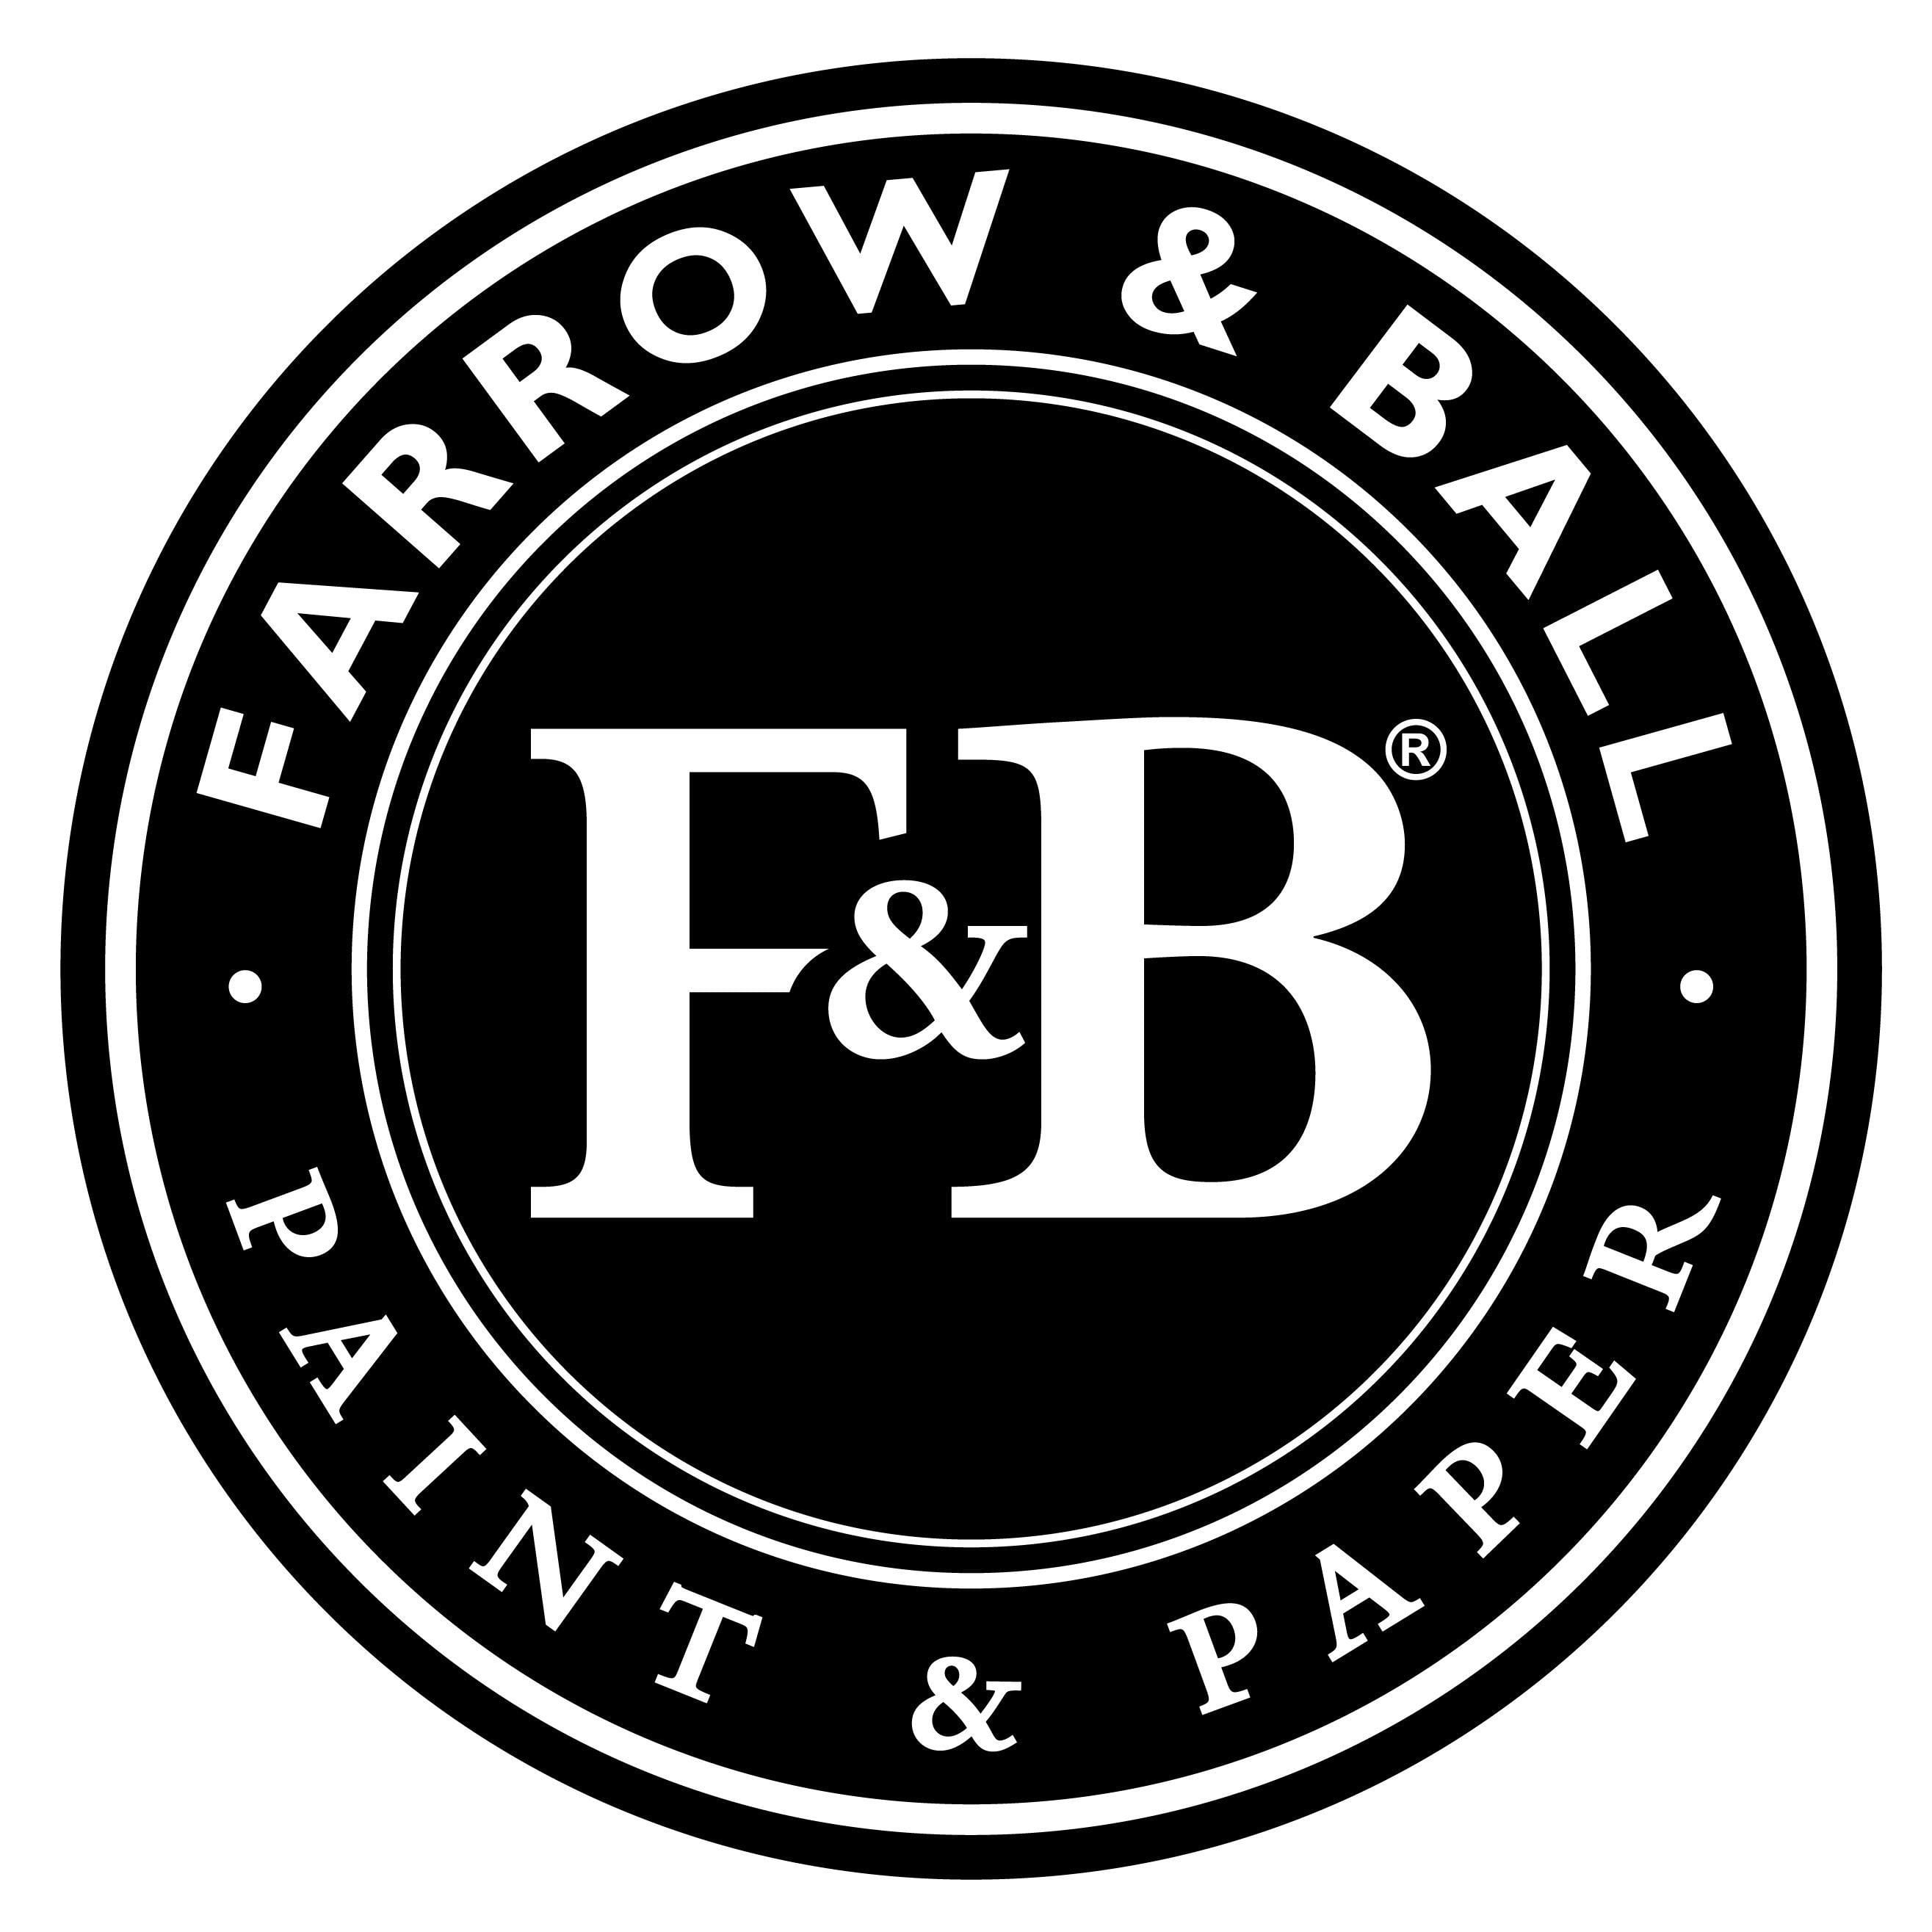 Farrow&Ball logo